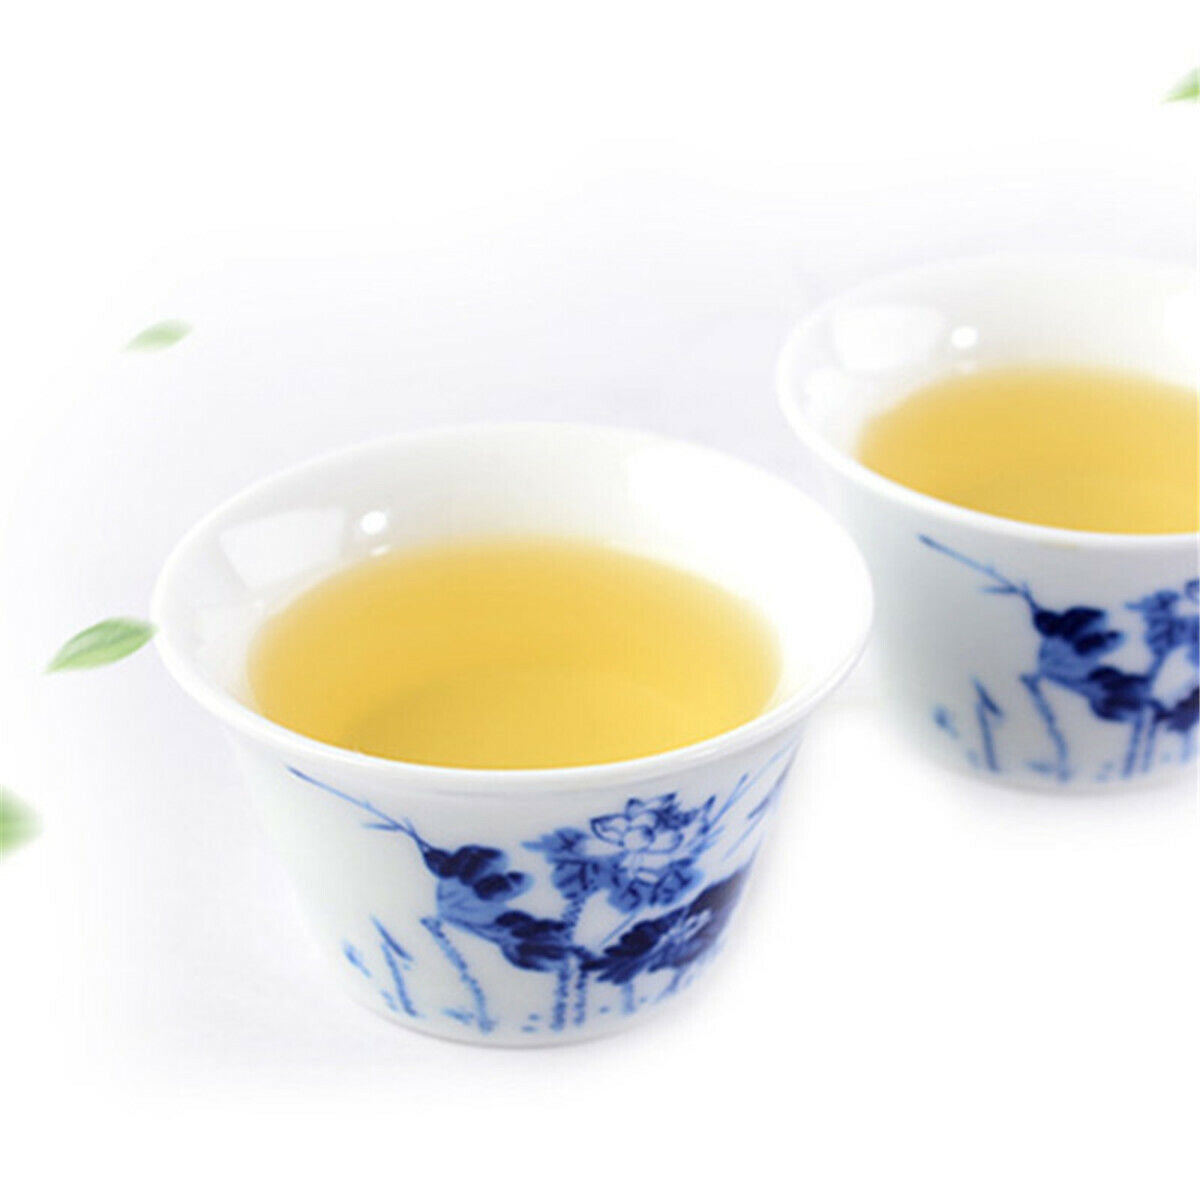 Taiwan Fresh Green Tea Organic High Quality Jinxuan Wulong Milk Oolong Tea 250g